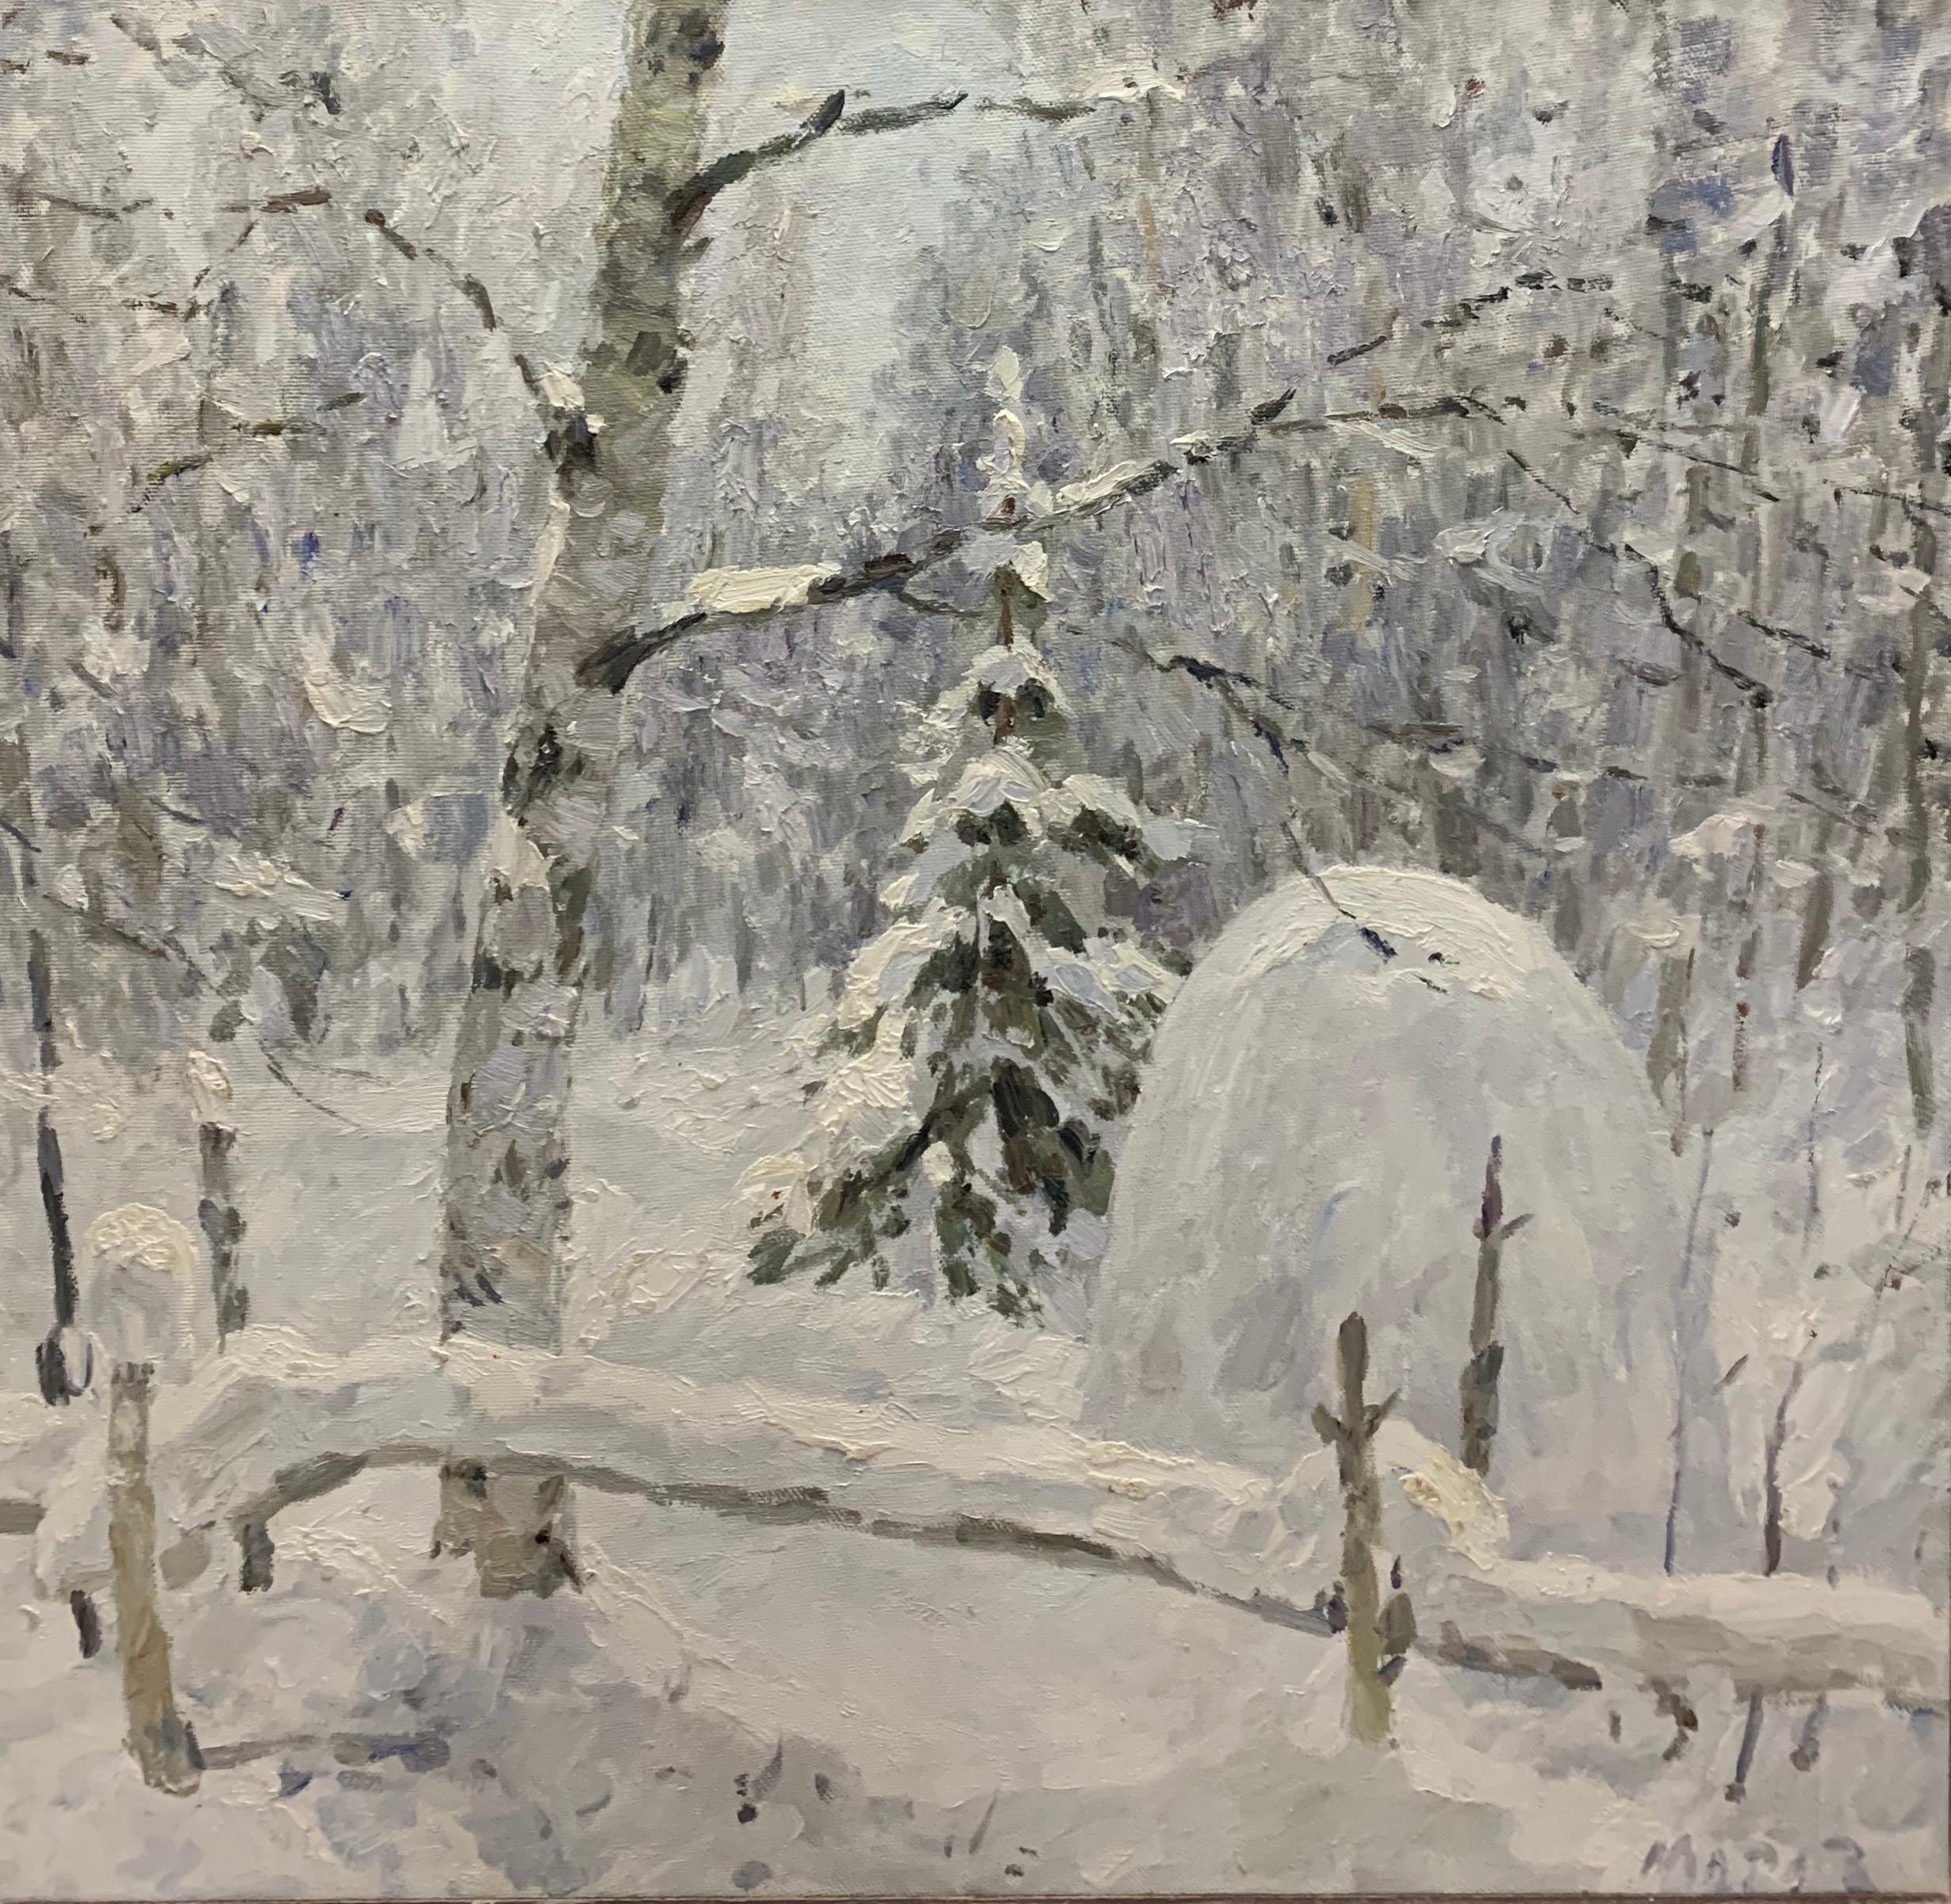 Landscape Painting Georgij Moroz - « Just snowed », blanc, neige, forêt, hiver, huile cm.100 x 99  Expédition gratuite